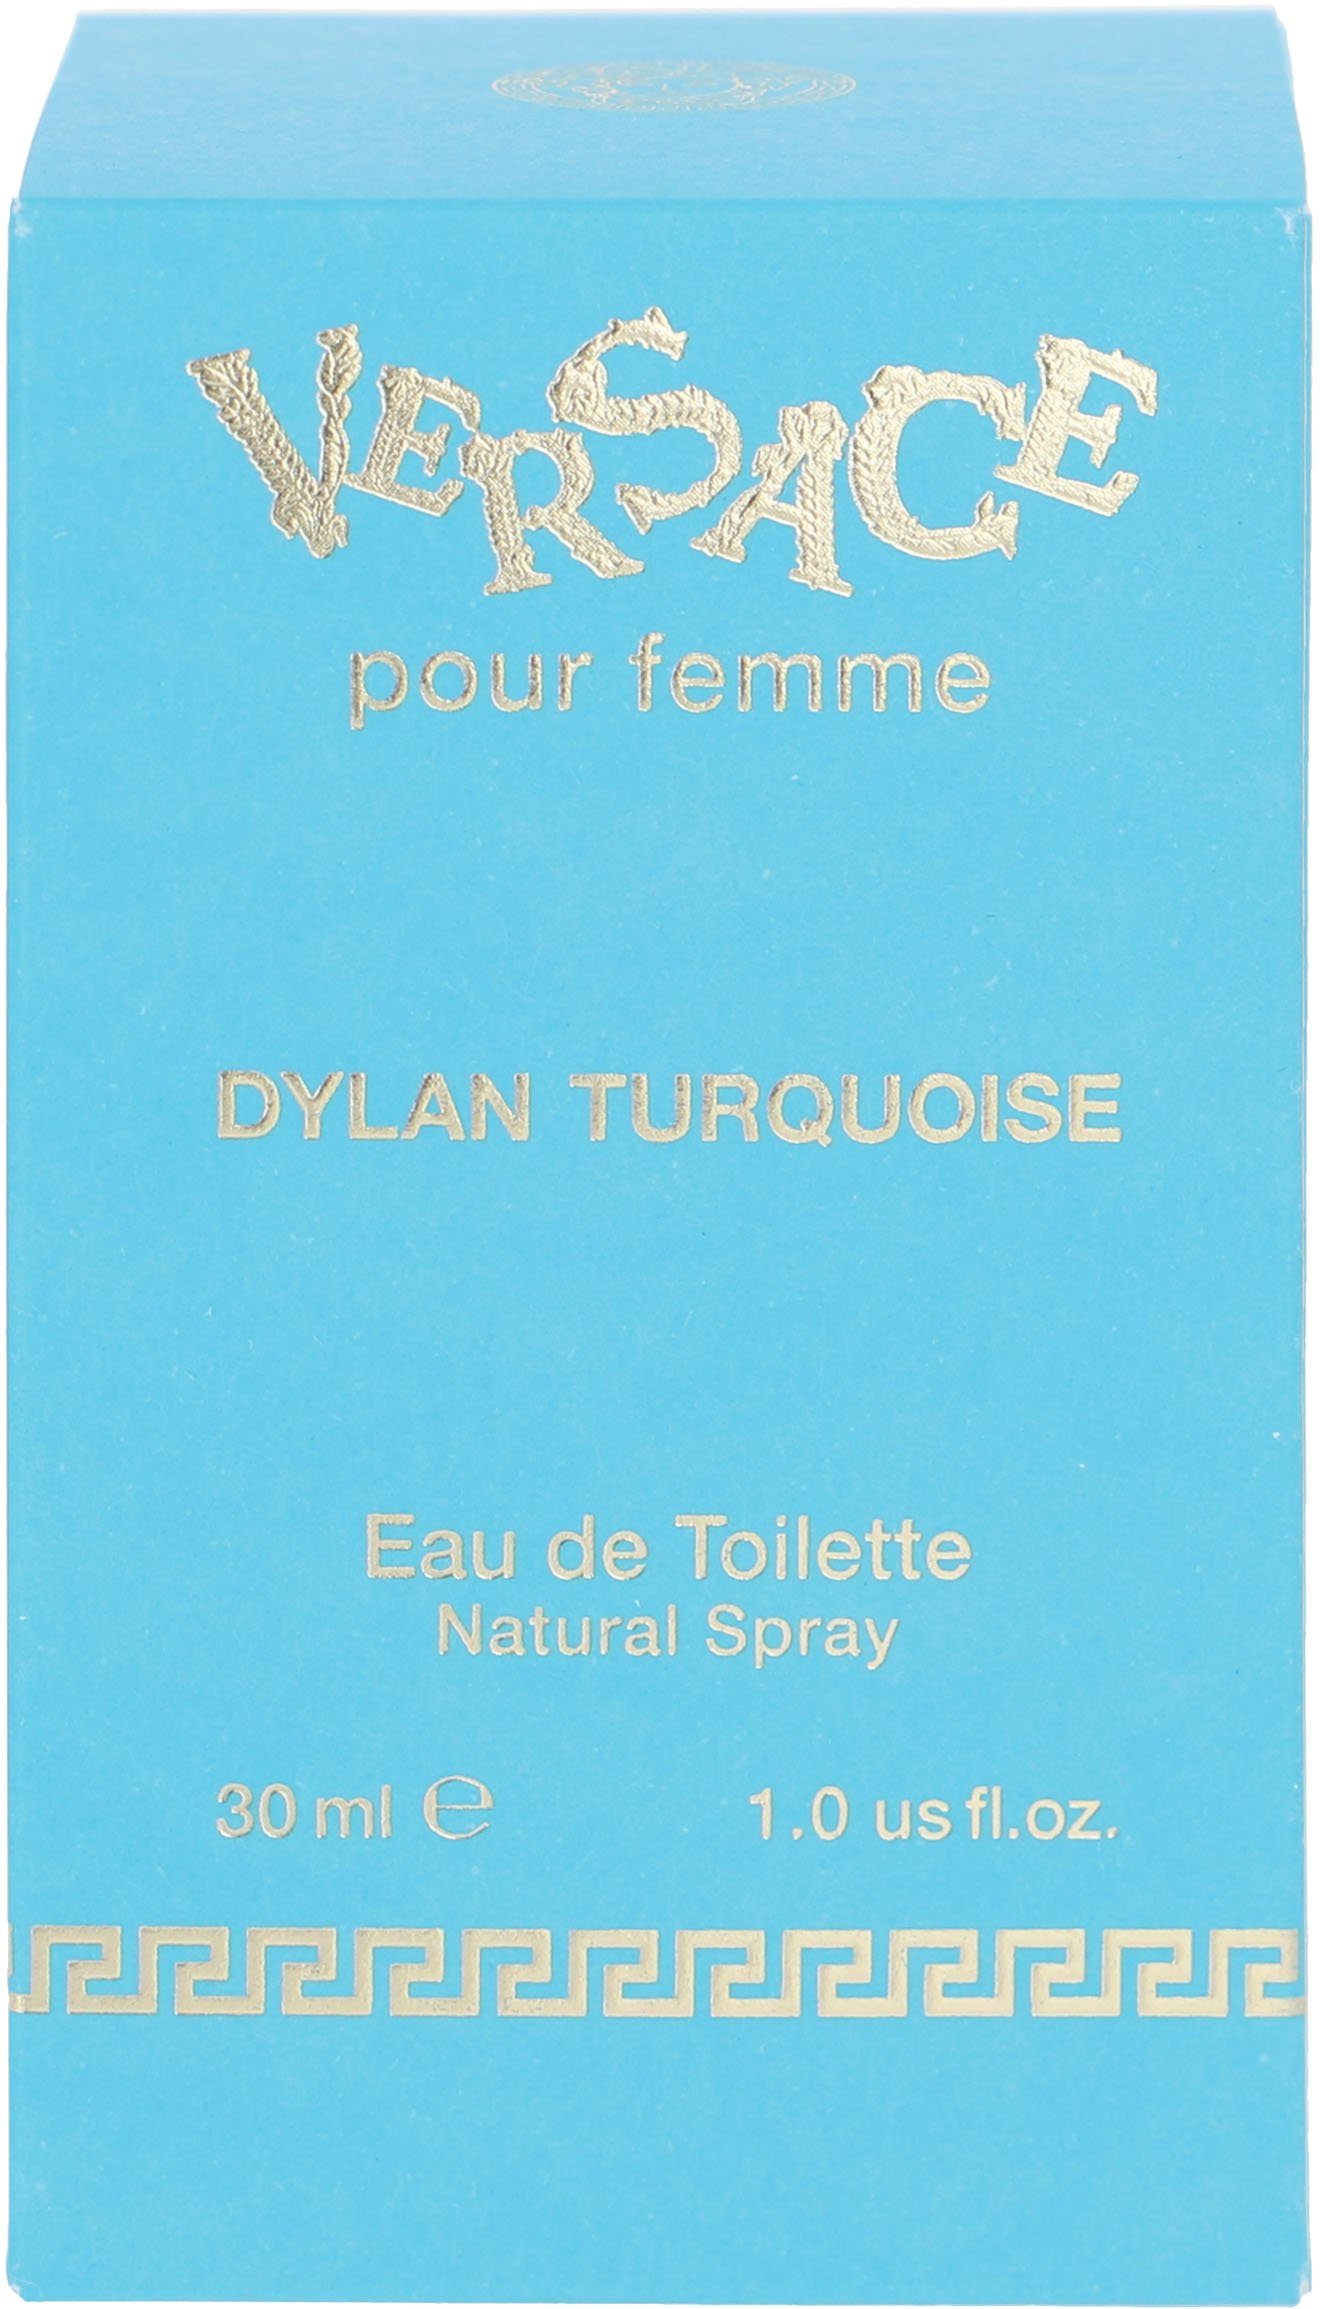 Versace Toilette Dylan de Femme Turquoise Eau Versace